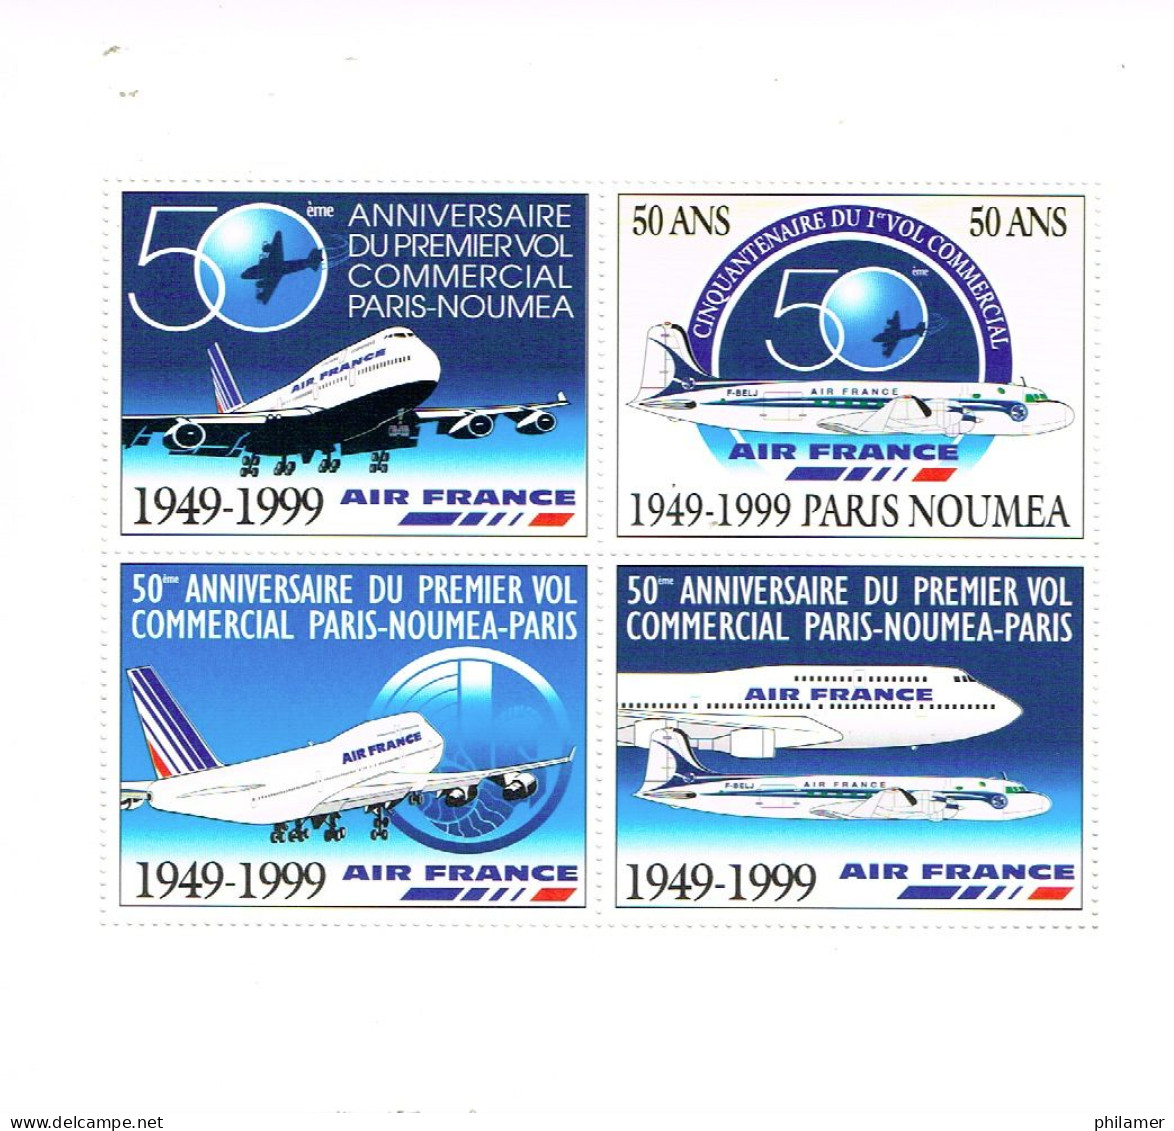 Nouvelle Caledonie Caledonia Bloc 4 Vignettes Postales Cinderela Extraite Carnet Aircalin 1999 Avion Neuve TBE - Oblitérés